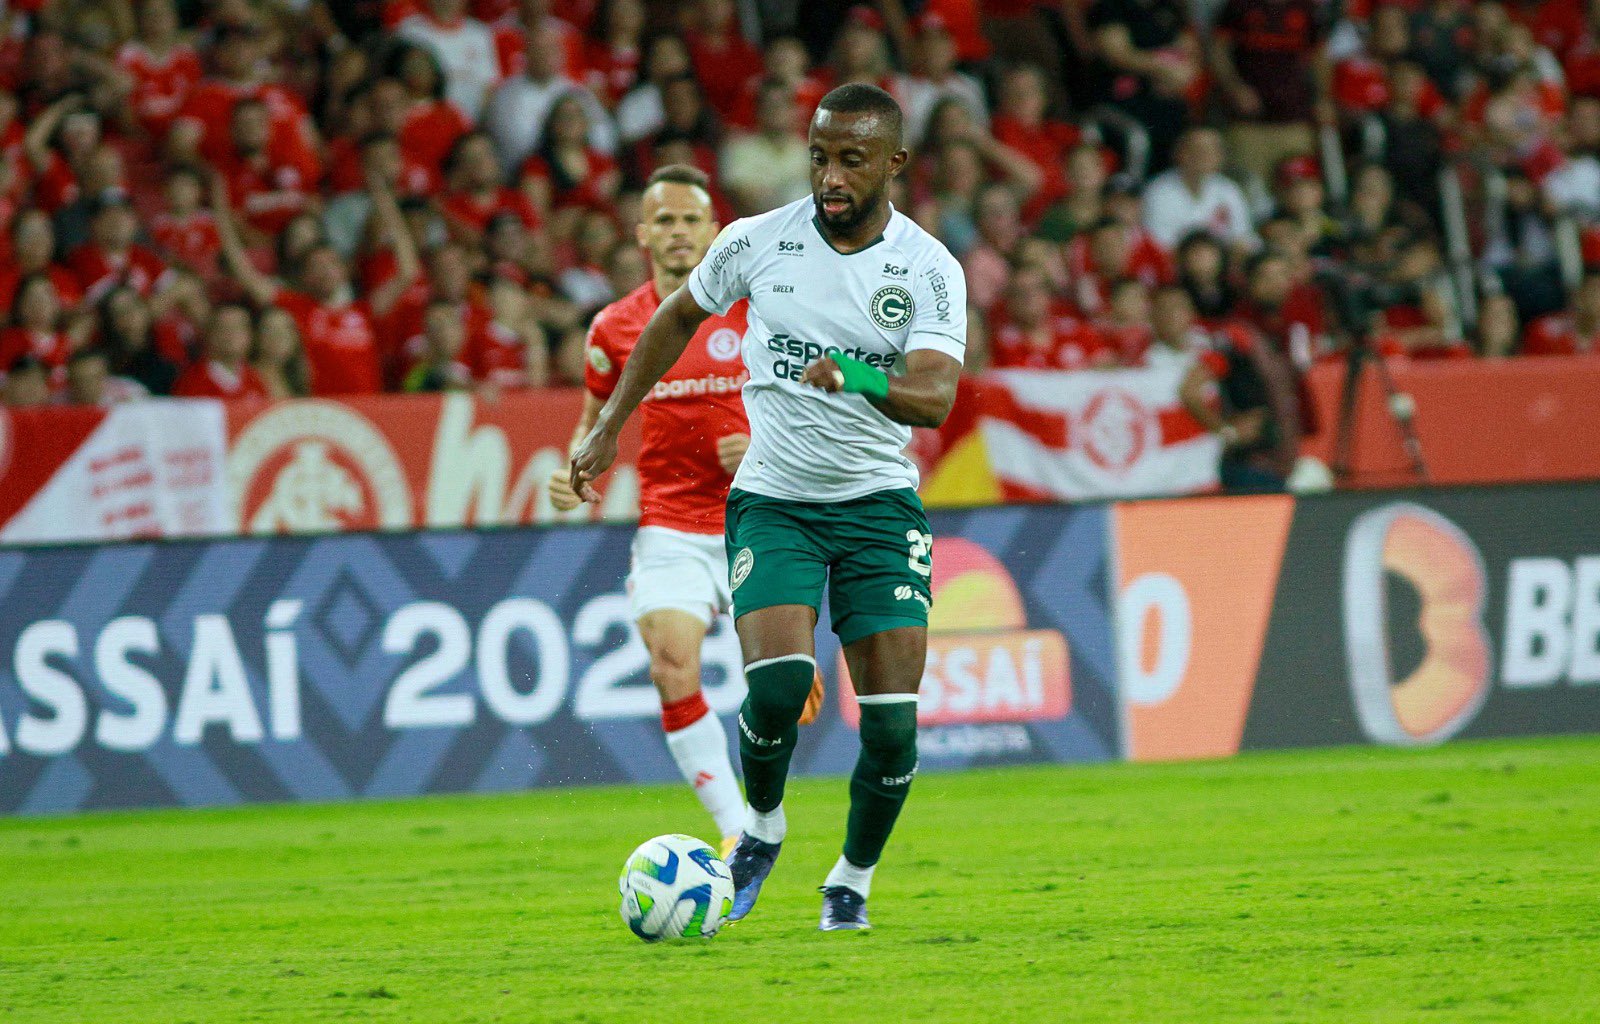 Goiás x Palmeiras: onde assistir, prováveis escalações e arbitragem